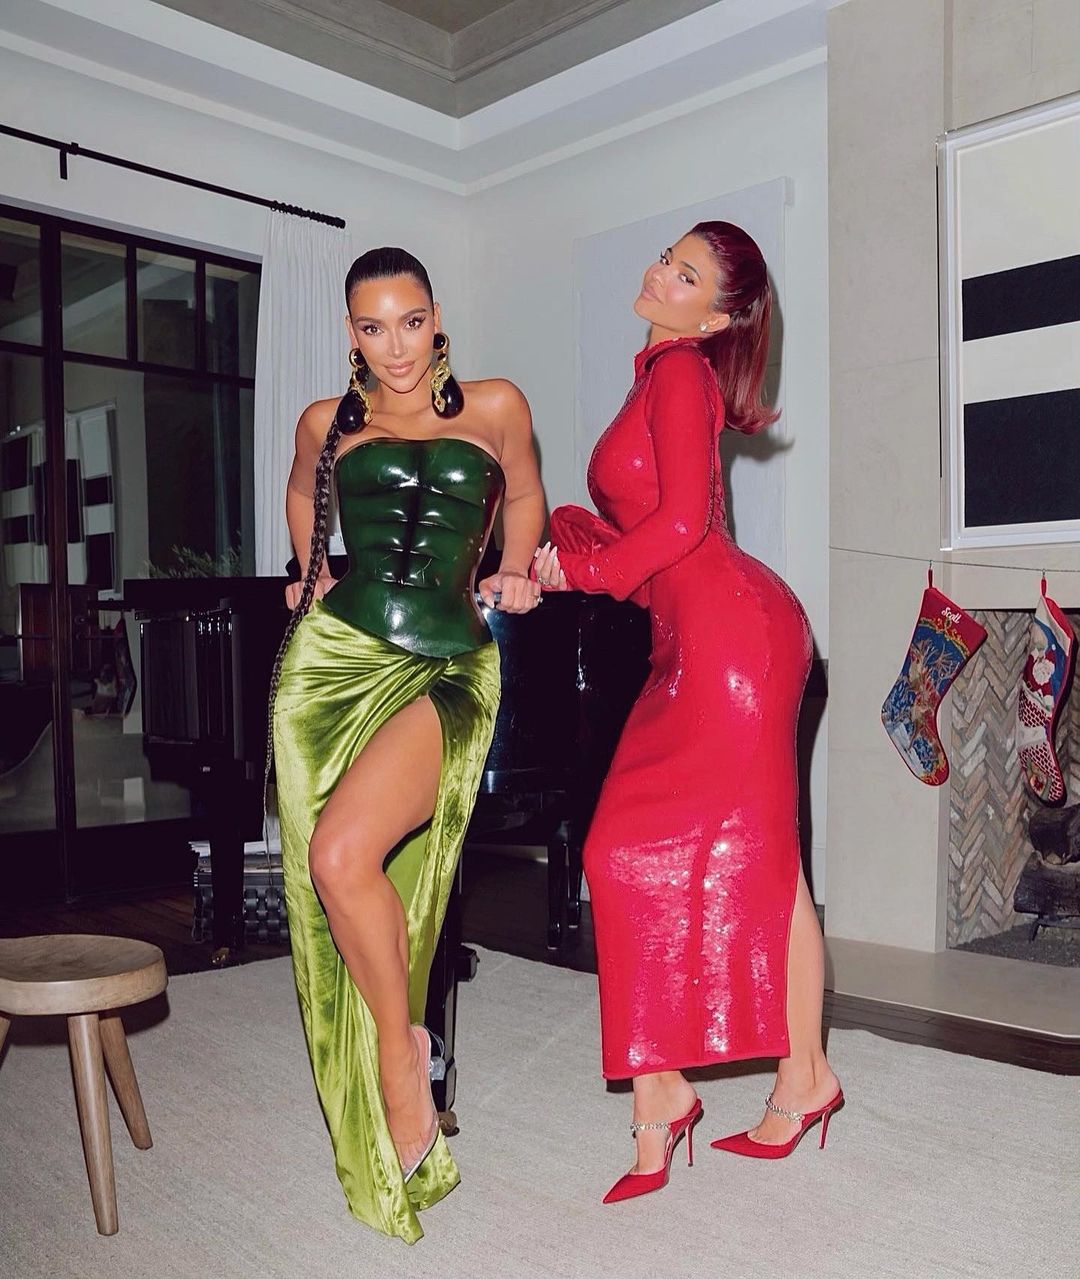 Hai tú nữ nhà Kardashian và Jenner cùng đọ dáng với nhau trong bức hình. Bữa tiệc Giáng sinh của đại gia đình trông rất vui vẻ, đầm ấm (Ảnh: @kimkardashian).